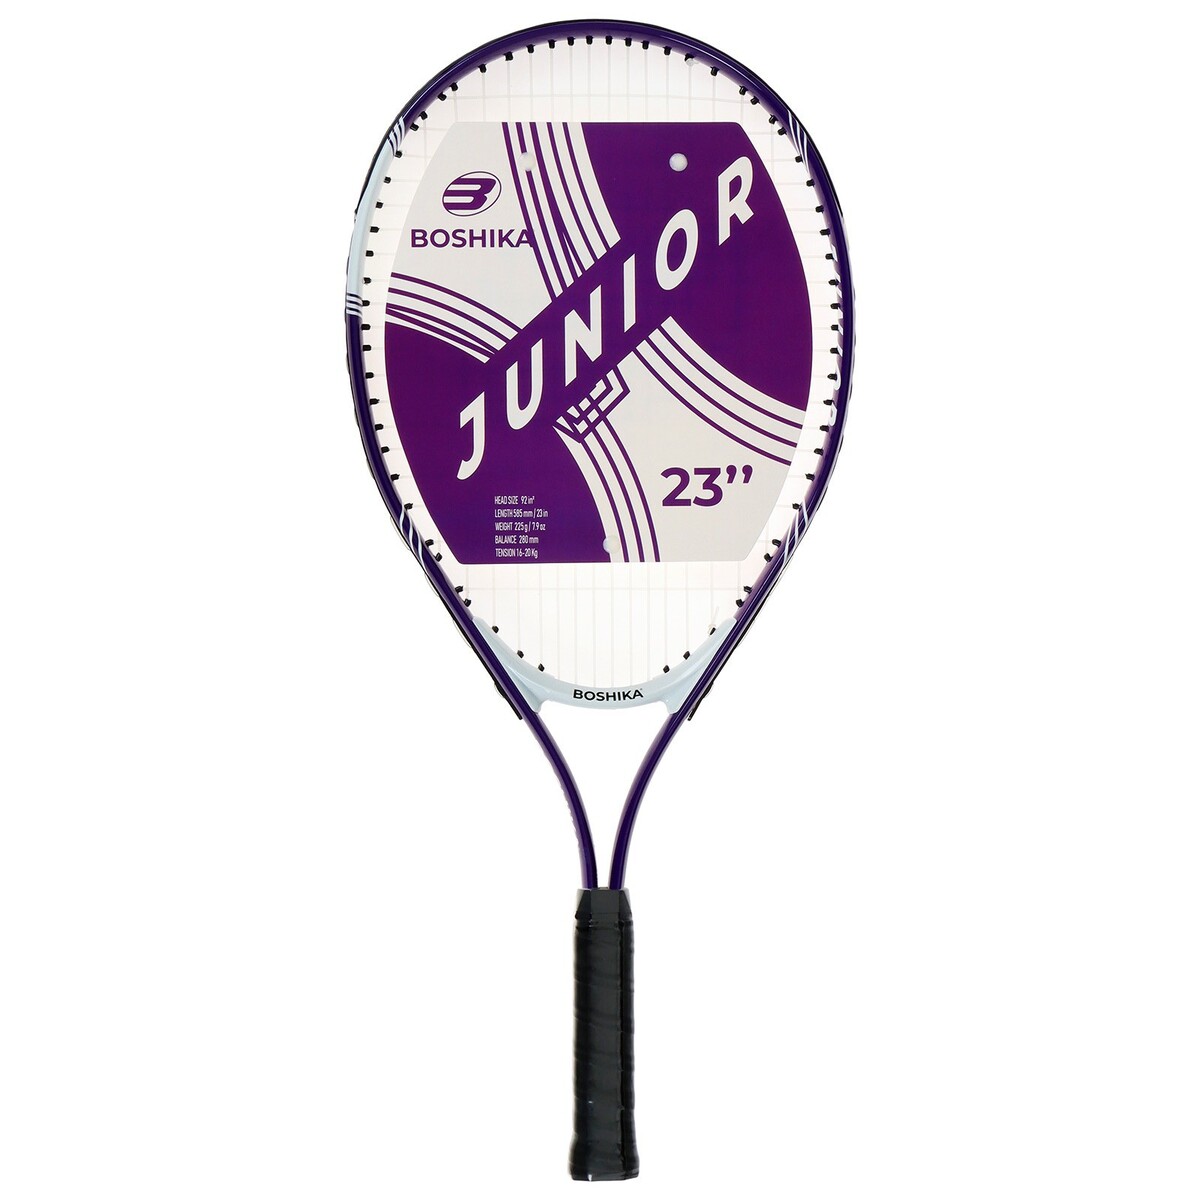 Ракетка для большого тенниса детская boshika junior, алюминий, 23'', цвет фиолетовый ракетка donic testra off 200203